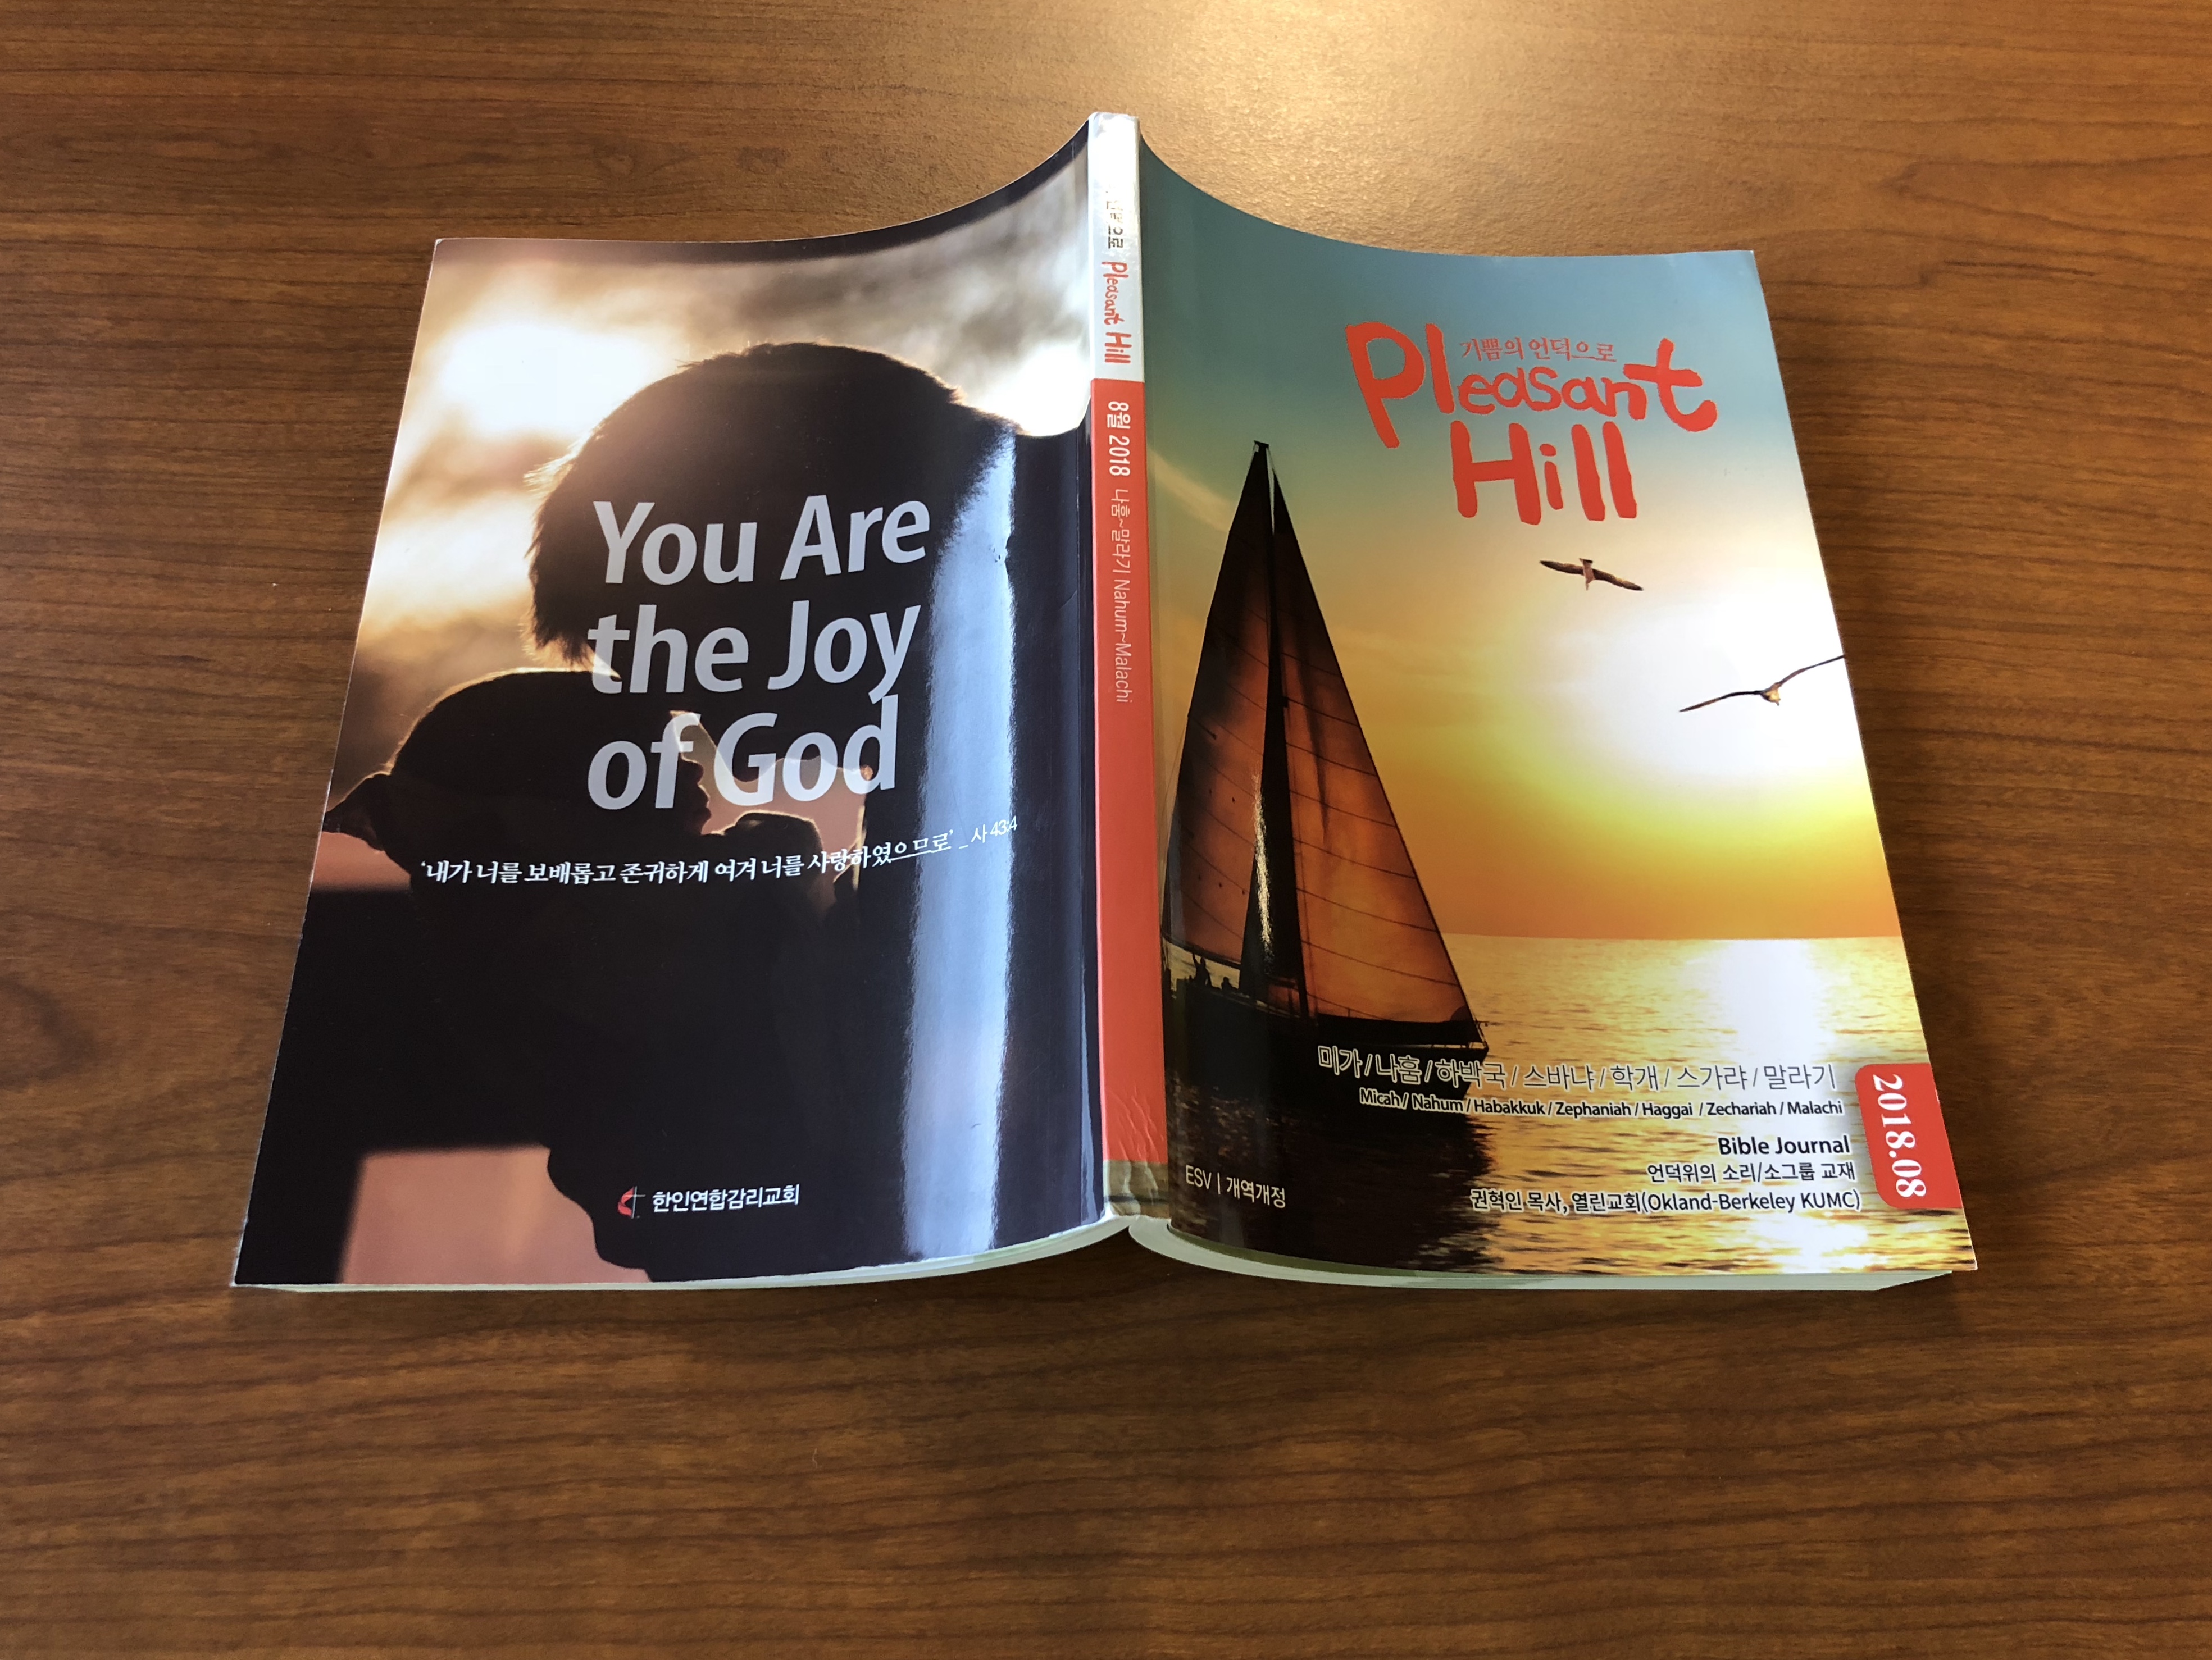 <기쁨의 언덕>은 한인연합감리교회의 월간 묵상집이다. 한영으로 출판 공급되고 있다. 